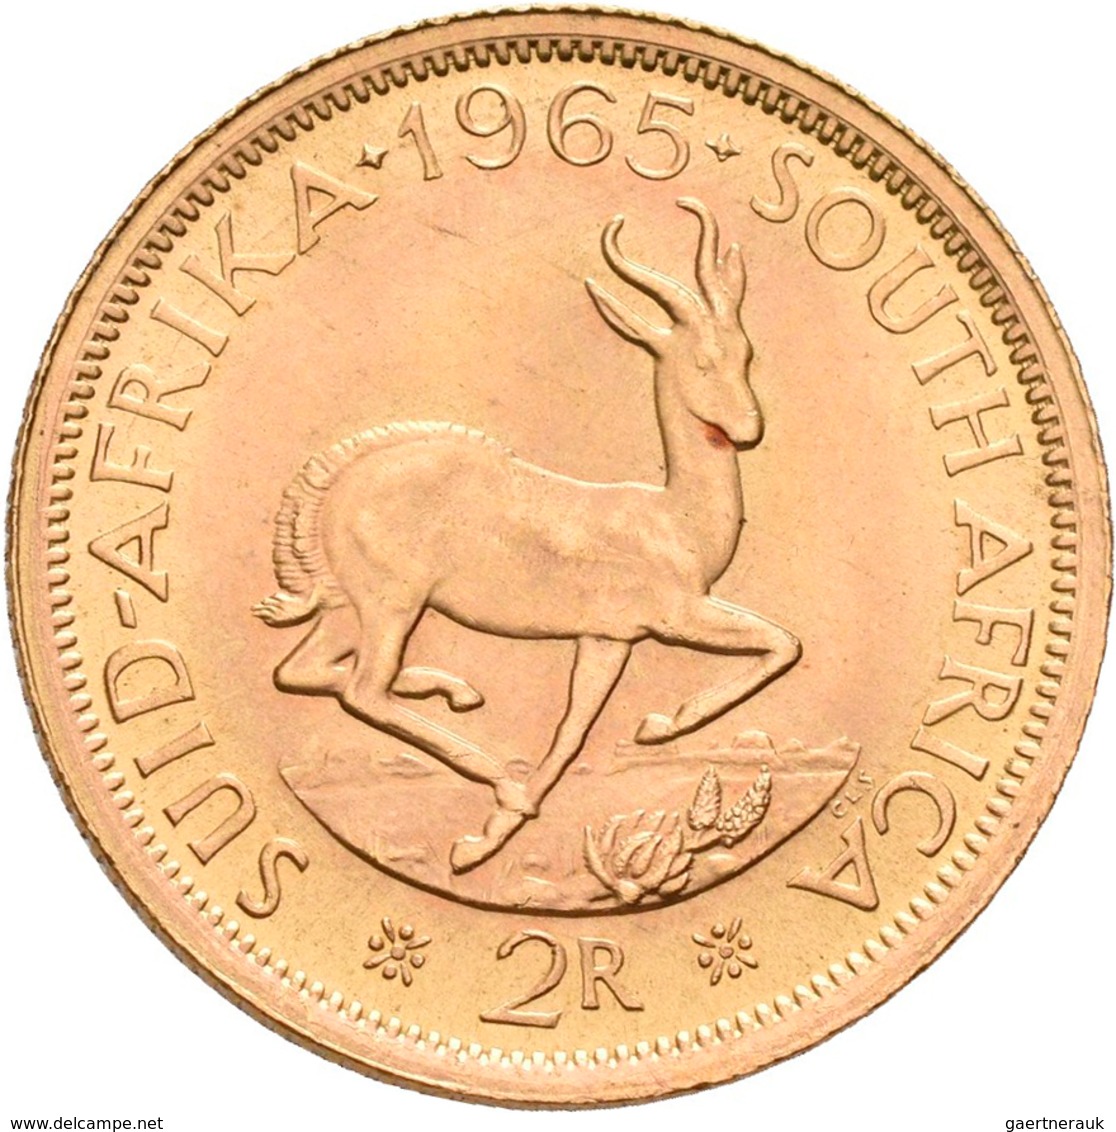 Südafrika - Anlagegold: 2 Rand 1965, KM# 64, Friedberg 11. 7,99 G, 917/1000 Gold, Vorzüglich. - Sud Africa